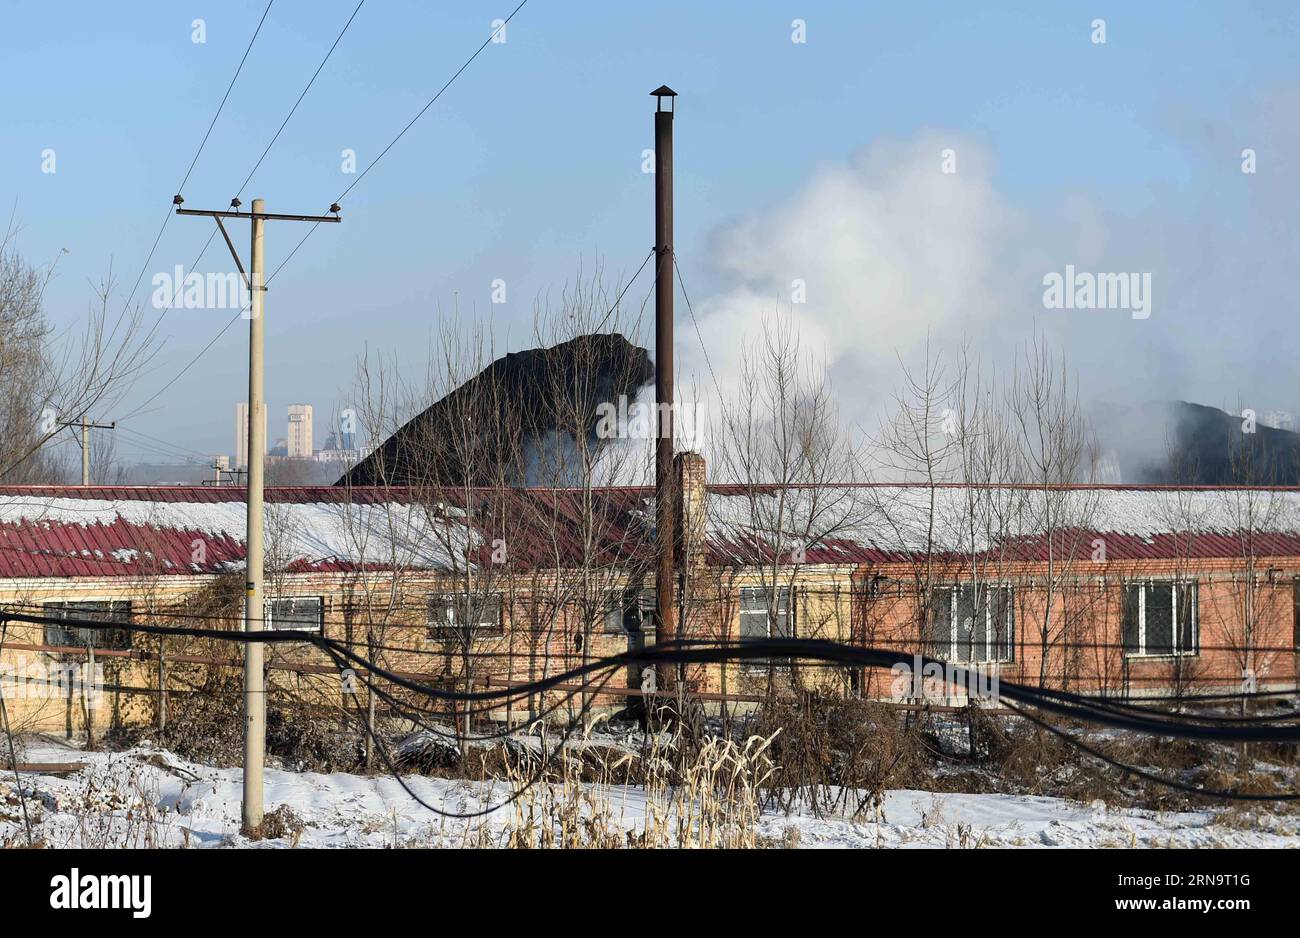 (151218) -- HEGANG, 18 décembre 2015 -- le puits de la mine de charbon de Xiangyang extrait les gaz à Hegang, dans la province du Heilongjiang, au nord-est de la Chine, 18 décembre 2015. Les 19 mineurs piégés dans une mine de charbon à la suite d’une explosion dans le nord-est de la Chine n’ont aucune chance de survivre en raison de niveaux excessifs de gaz toxiques et de températures élevées, a déclaré vendredi l’équipe de secours. Les experts en sécurité ont proposé que l'embouchure de la mine soit fermée de manière à ce que des gaz inertes puissent être pompés dans le puits pour éteindre les flammes. )(mcg) CHINA-HEILONGJIANG-HEGANG-COAL MINE ACCIDENT-RESCUE (CN) WangxJianwei PUBLICATIONxNOTxINxCHN 1 Banque D'Images